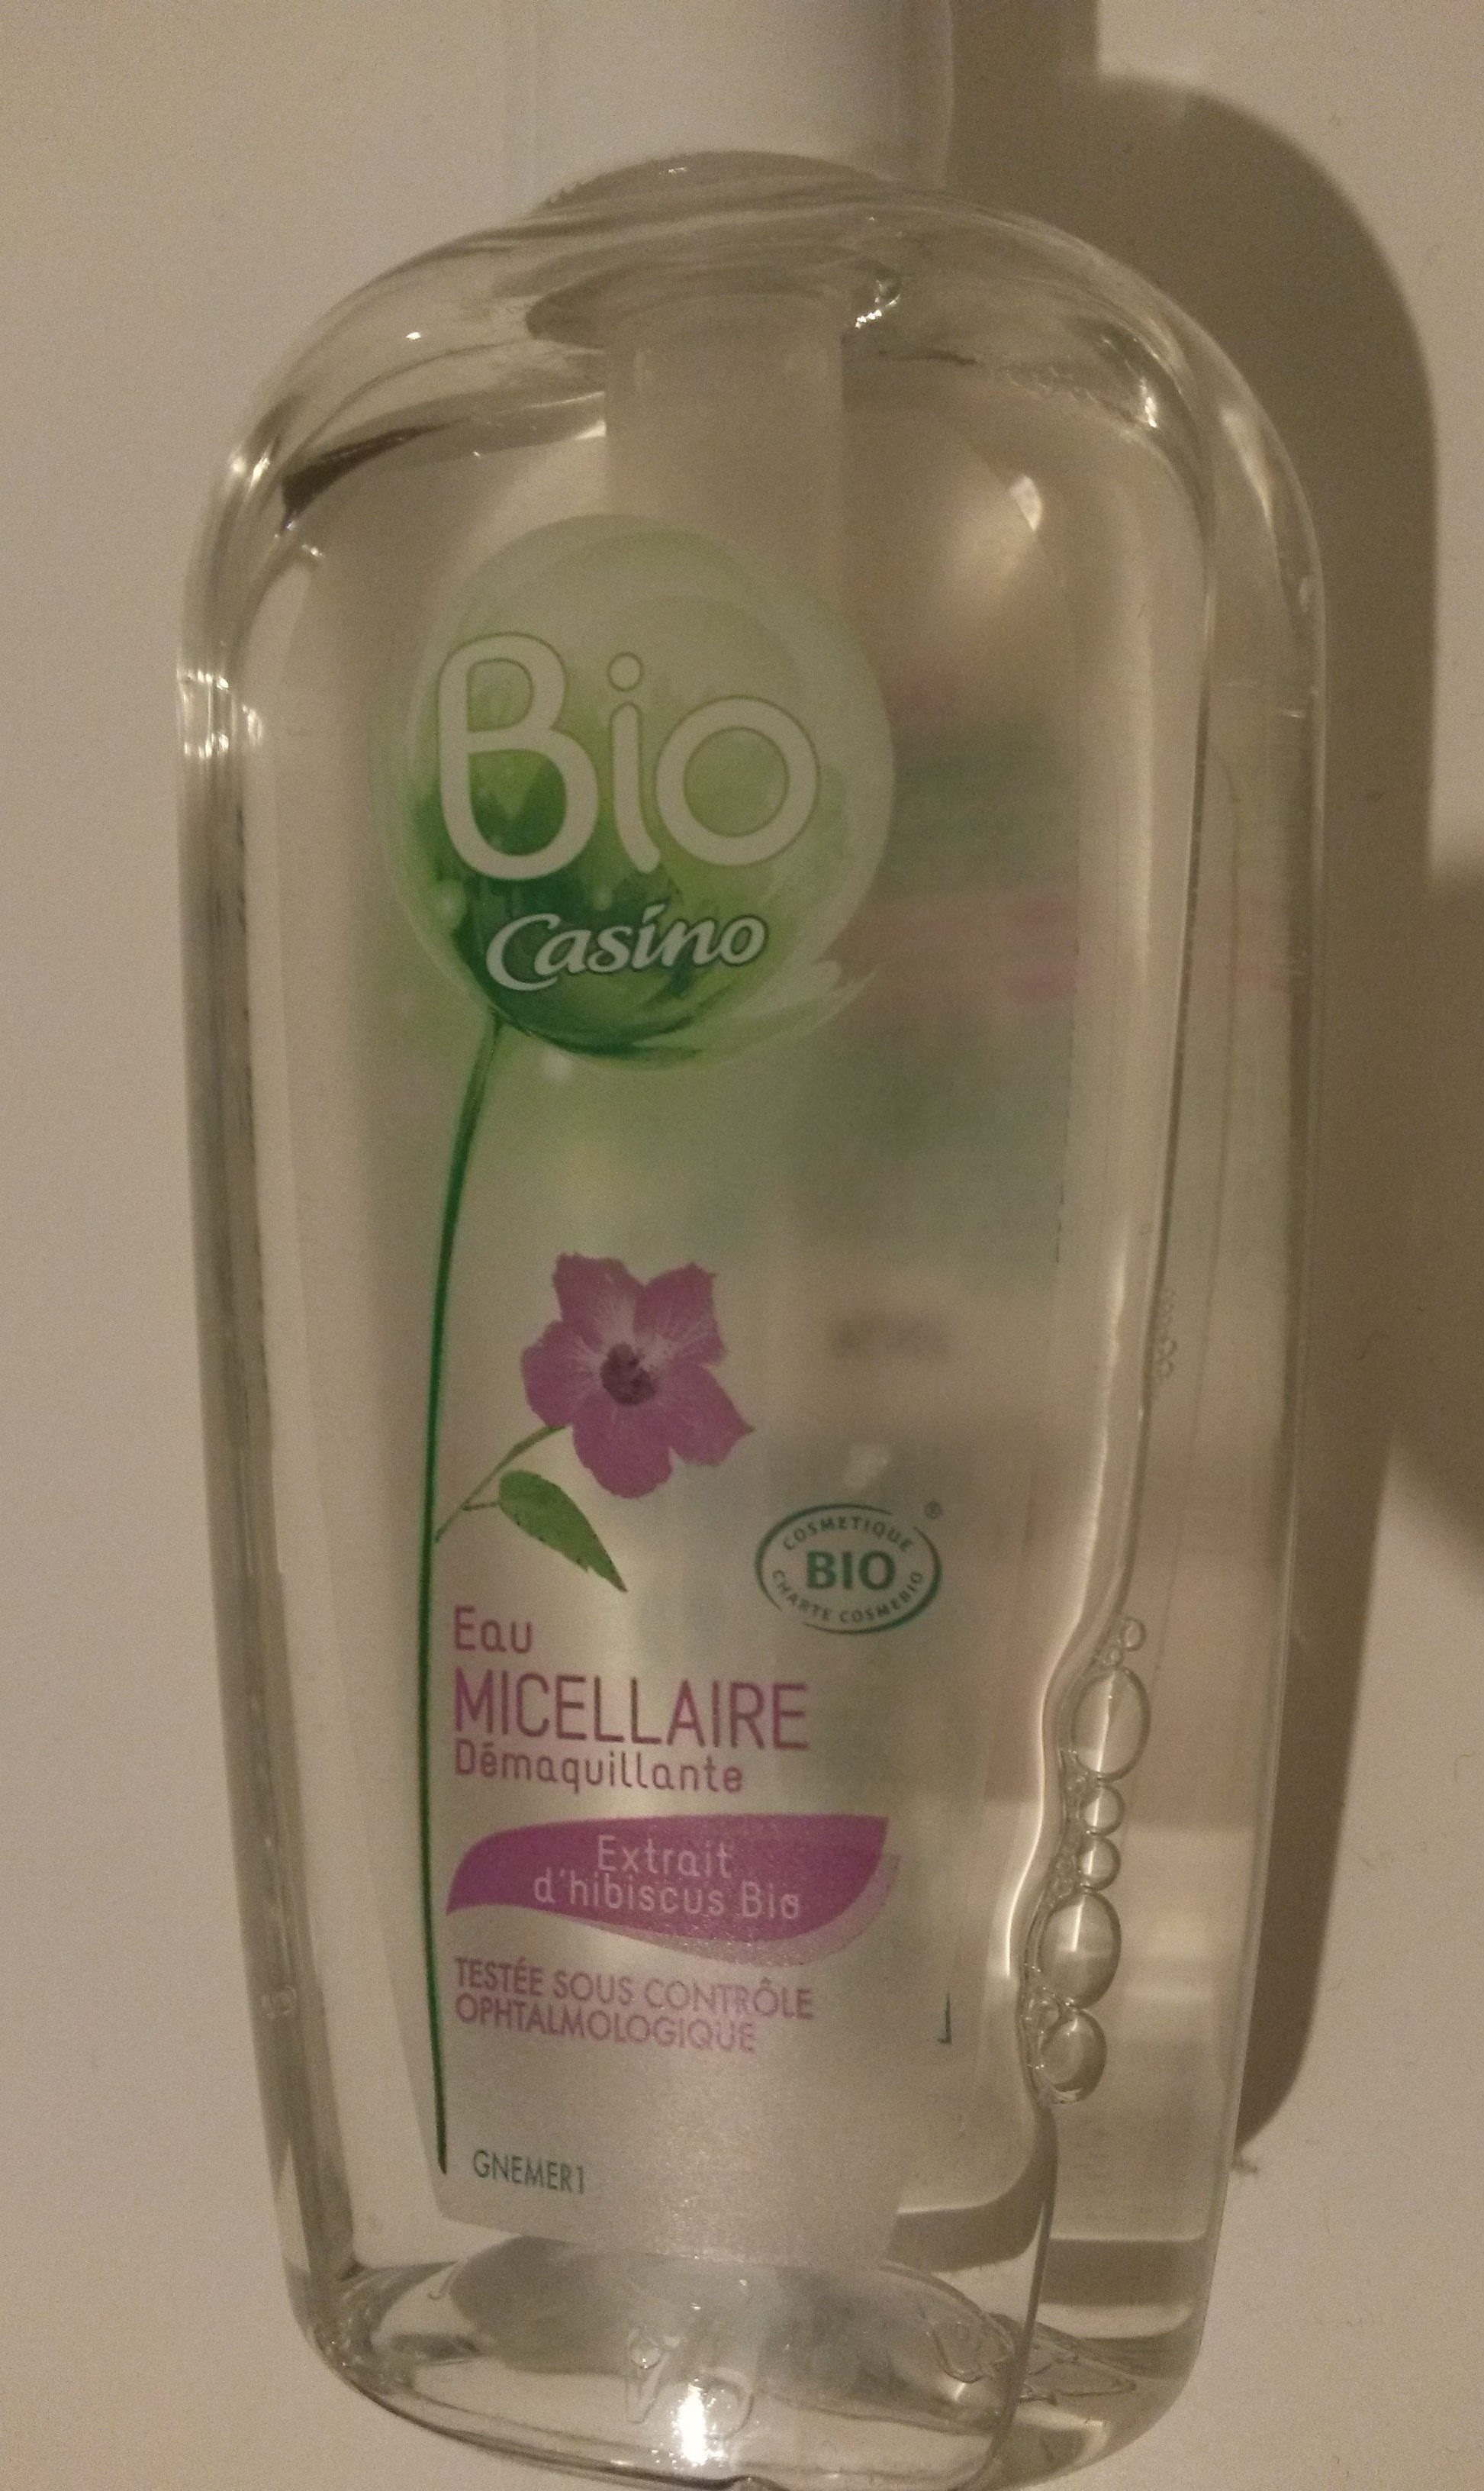 Eau micellaire démaquillante - extrait d'hibiscus bio - Produkt - fr